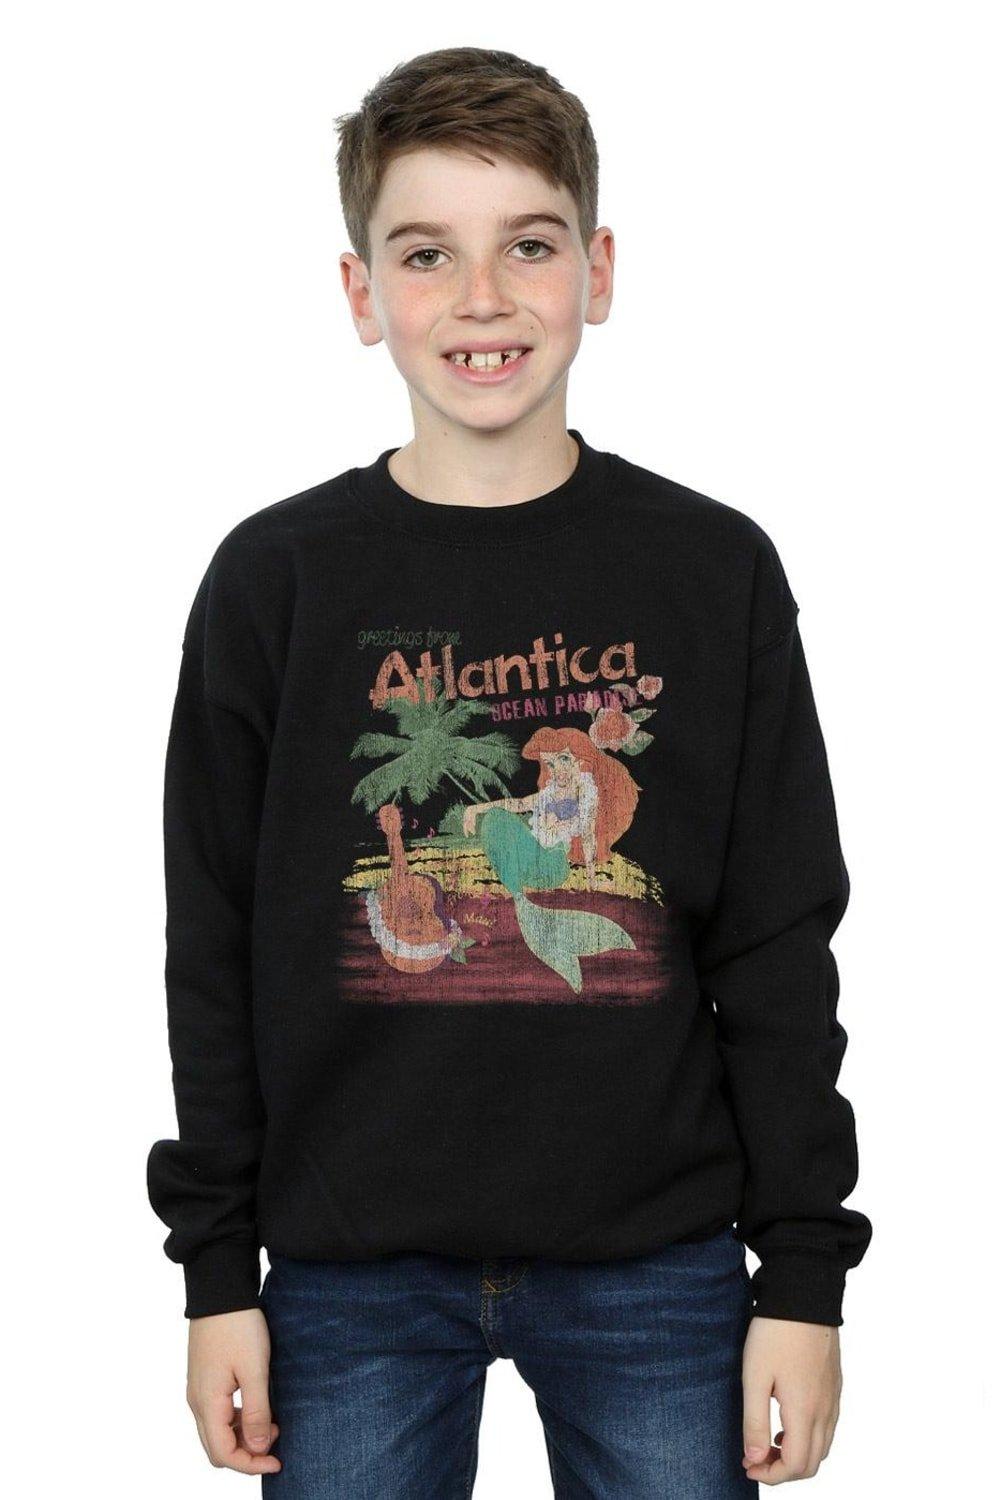 The Little Mermaid Greetings From Atlantica Sweatshirt